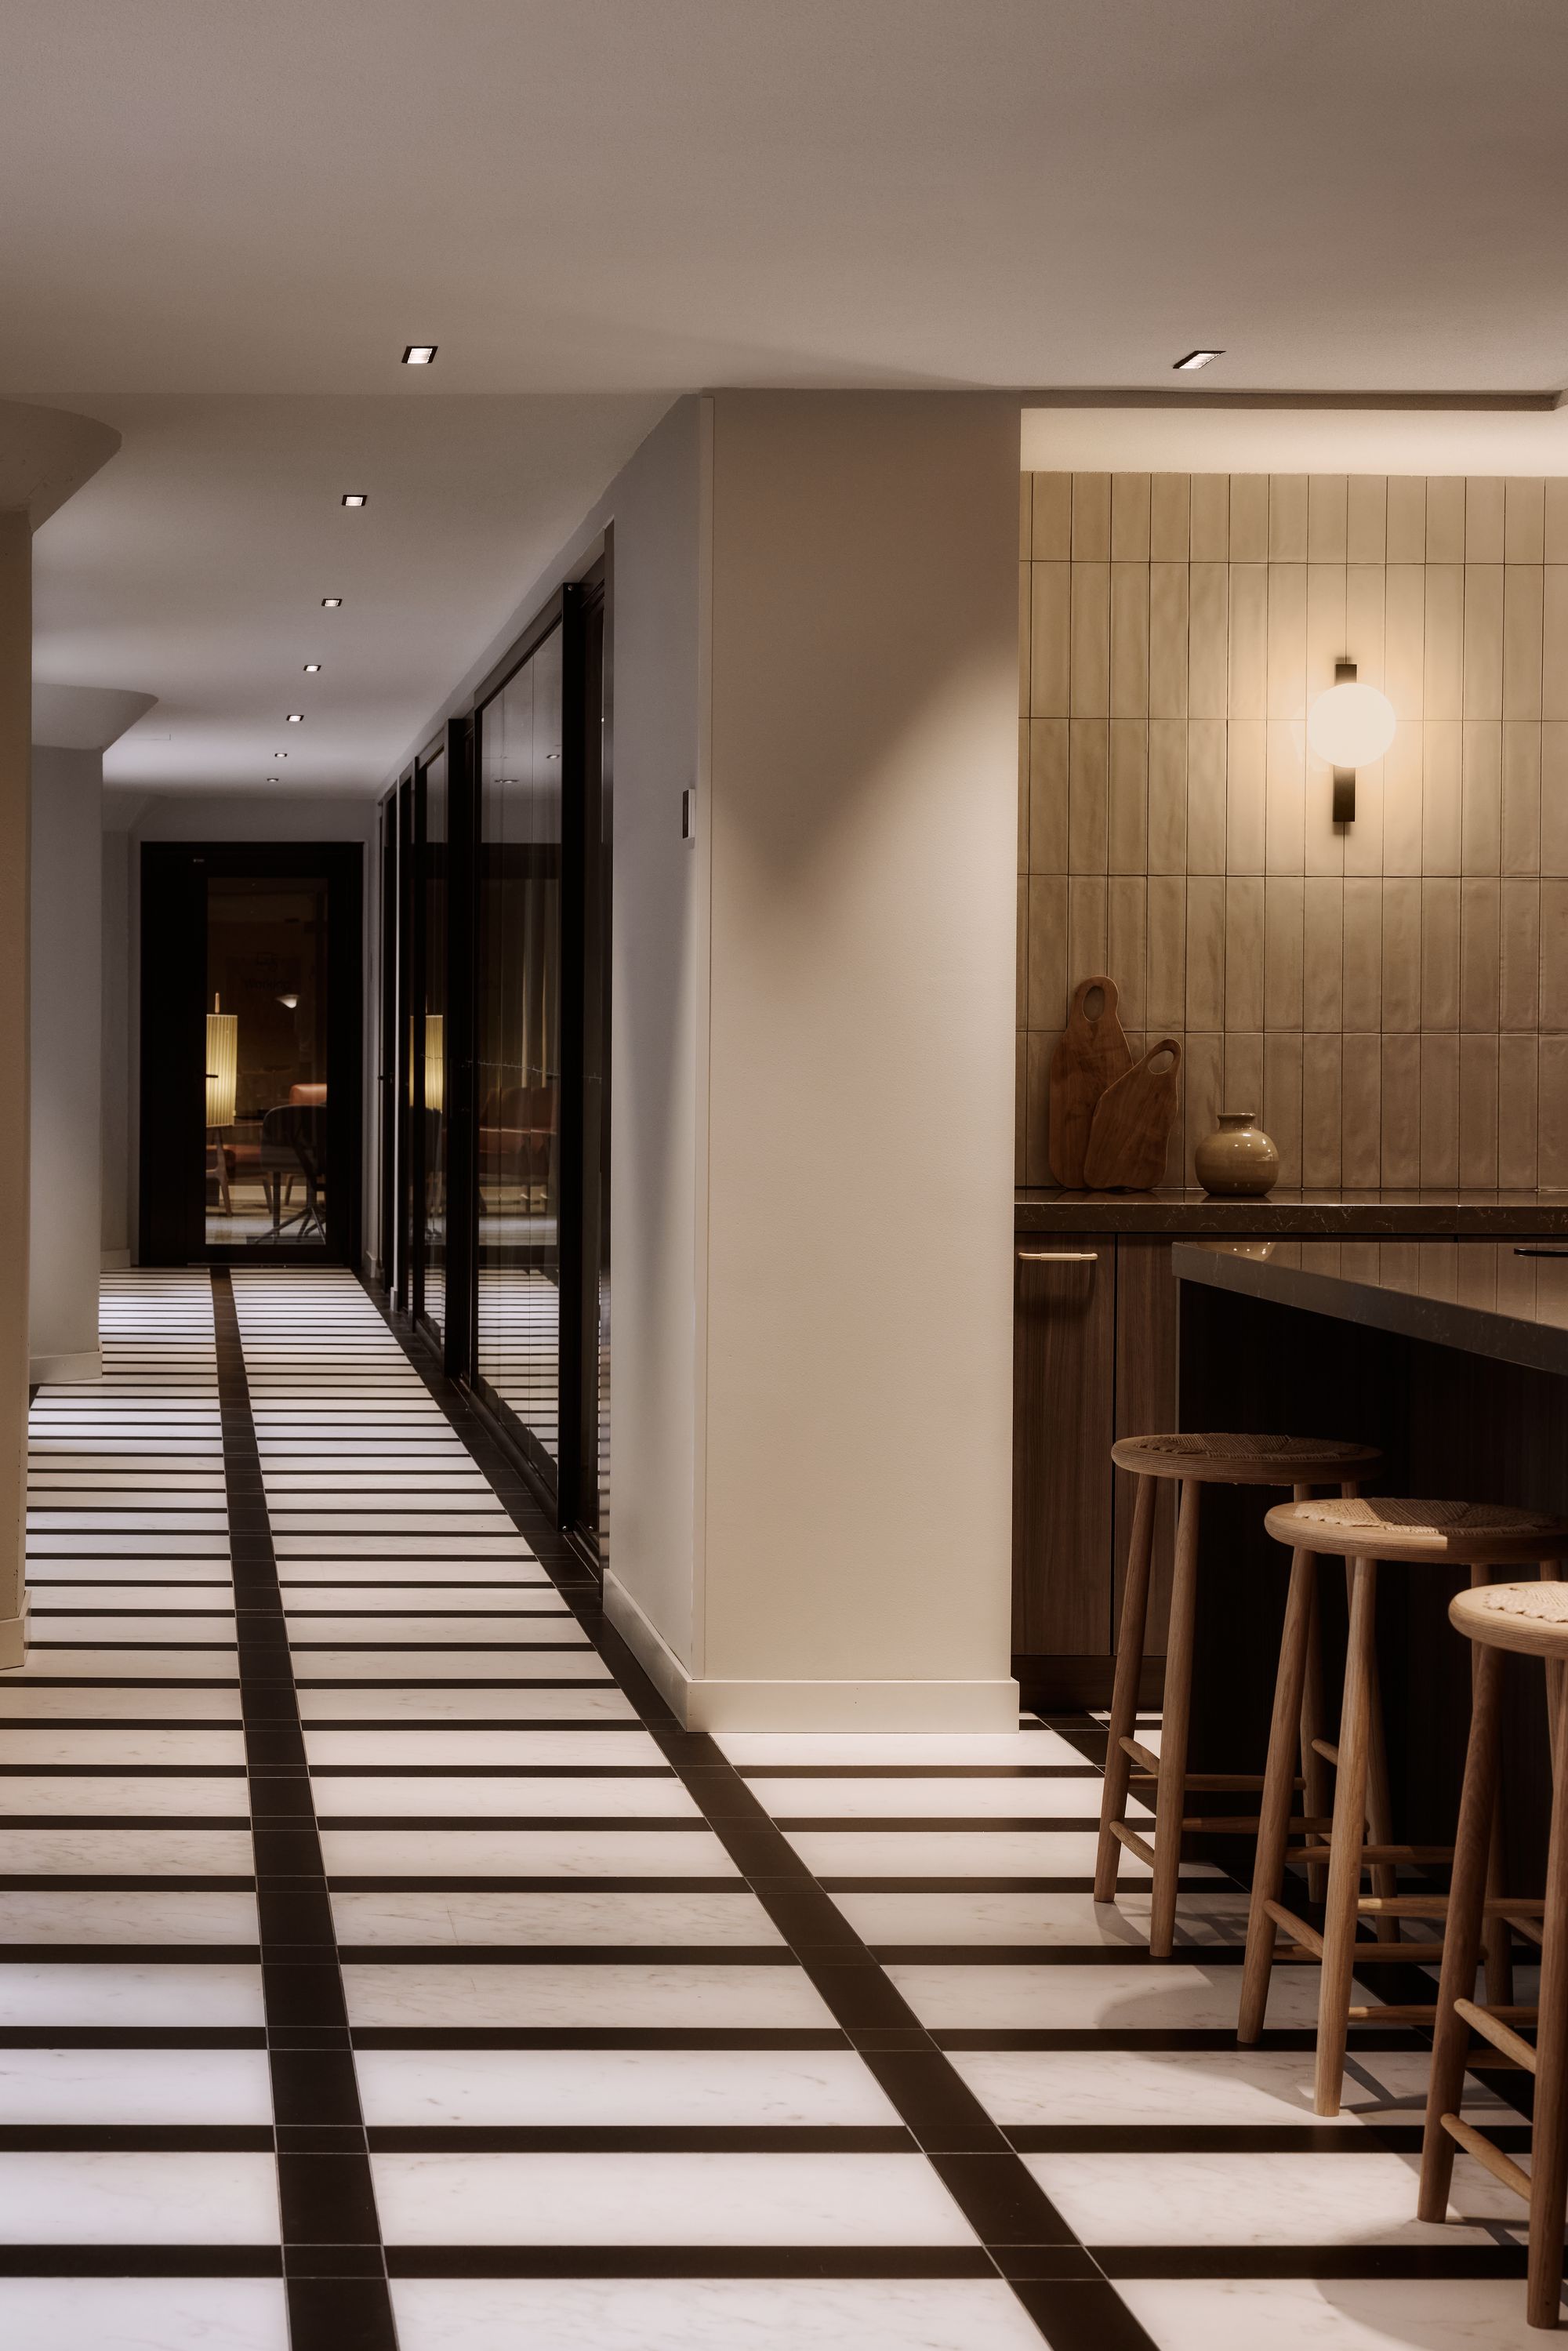 图片[2]|卡塔亚诺卡诺丽酒店II|ART-Arrakis | 建筑室内设计的创新与灵感